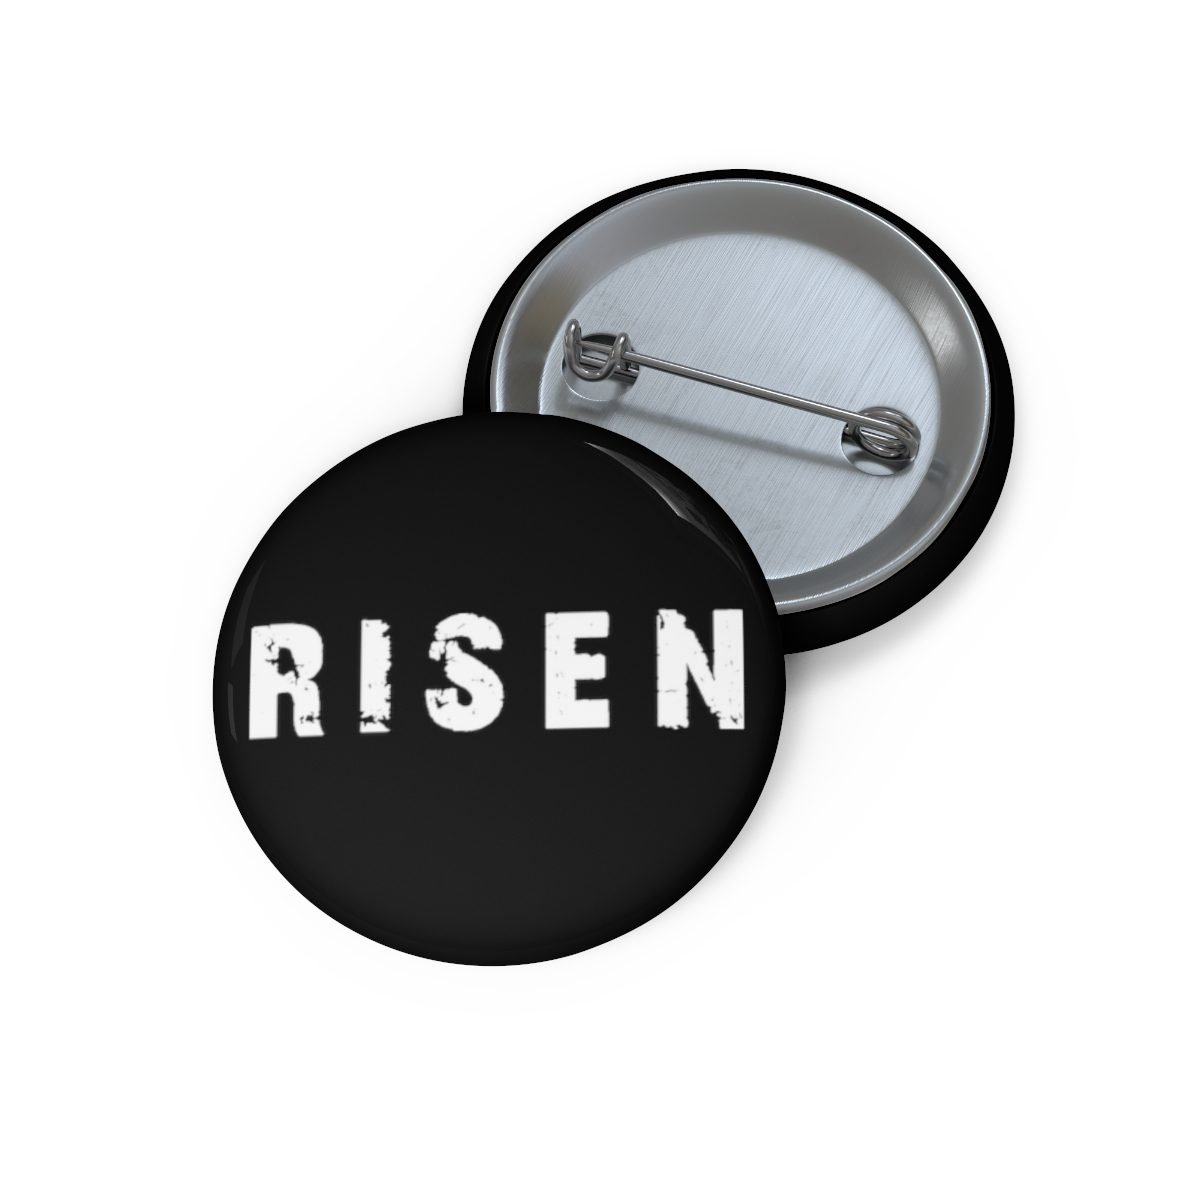 Risen – Logo Pin Buttons